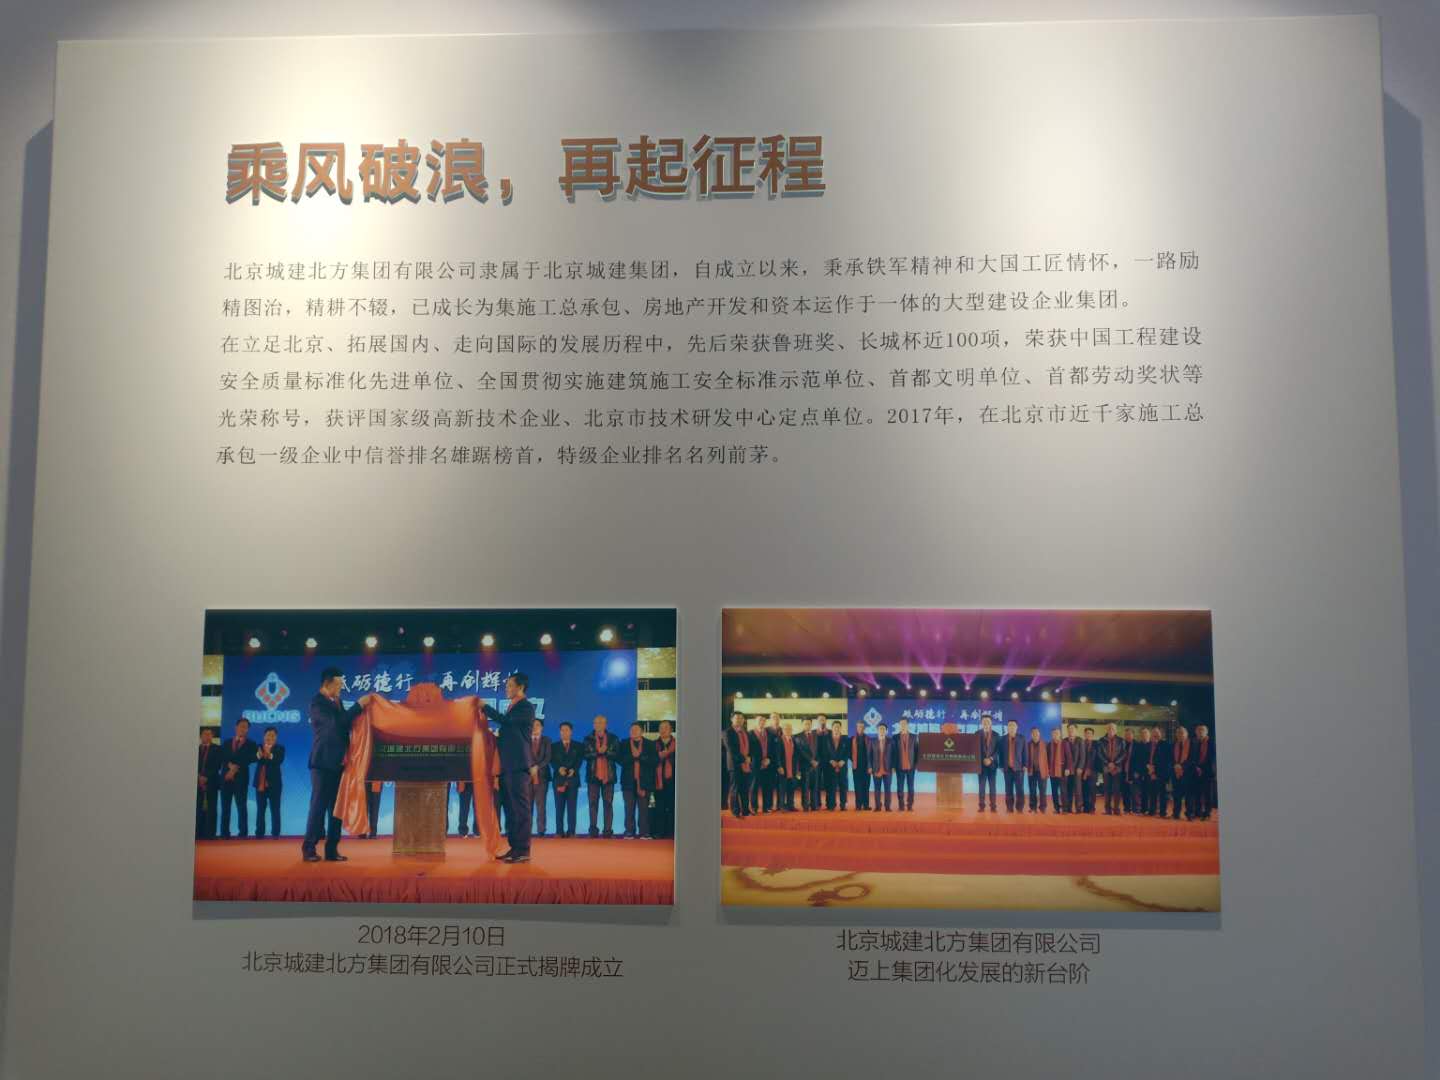 北京城建集团开发商介绍，北京城建集团2018年正式上市记录照片